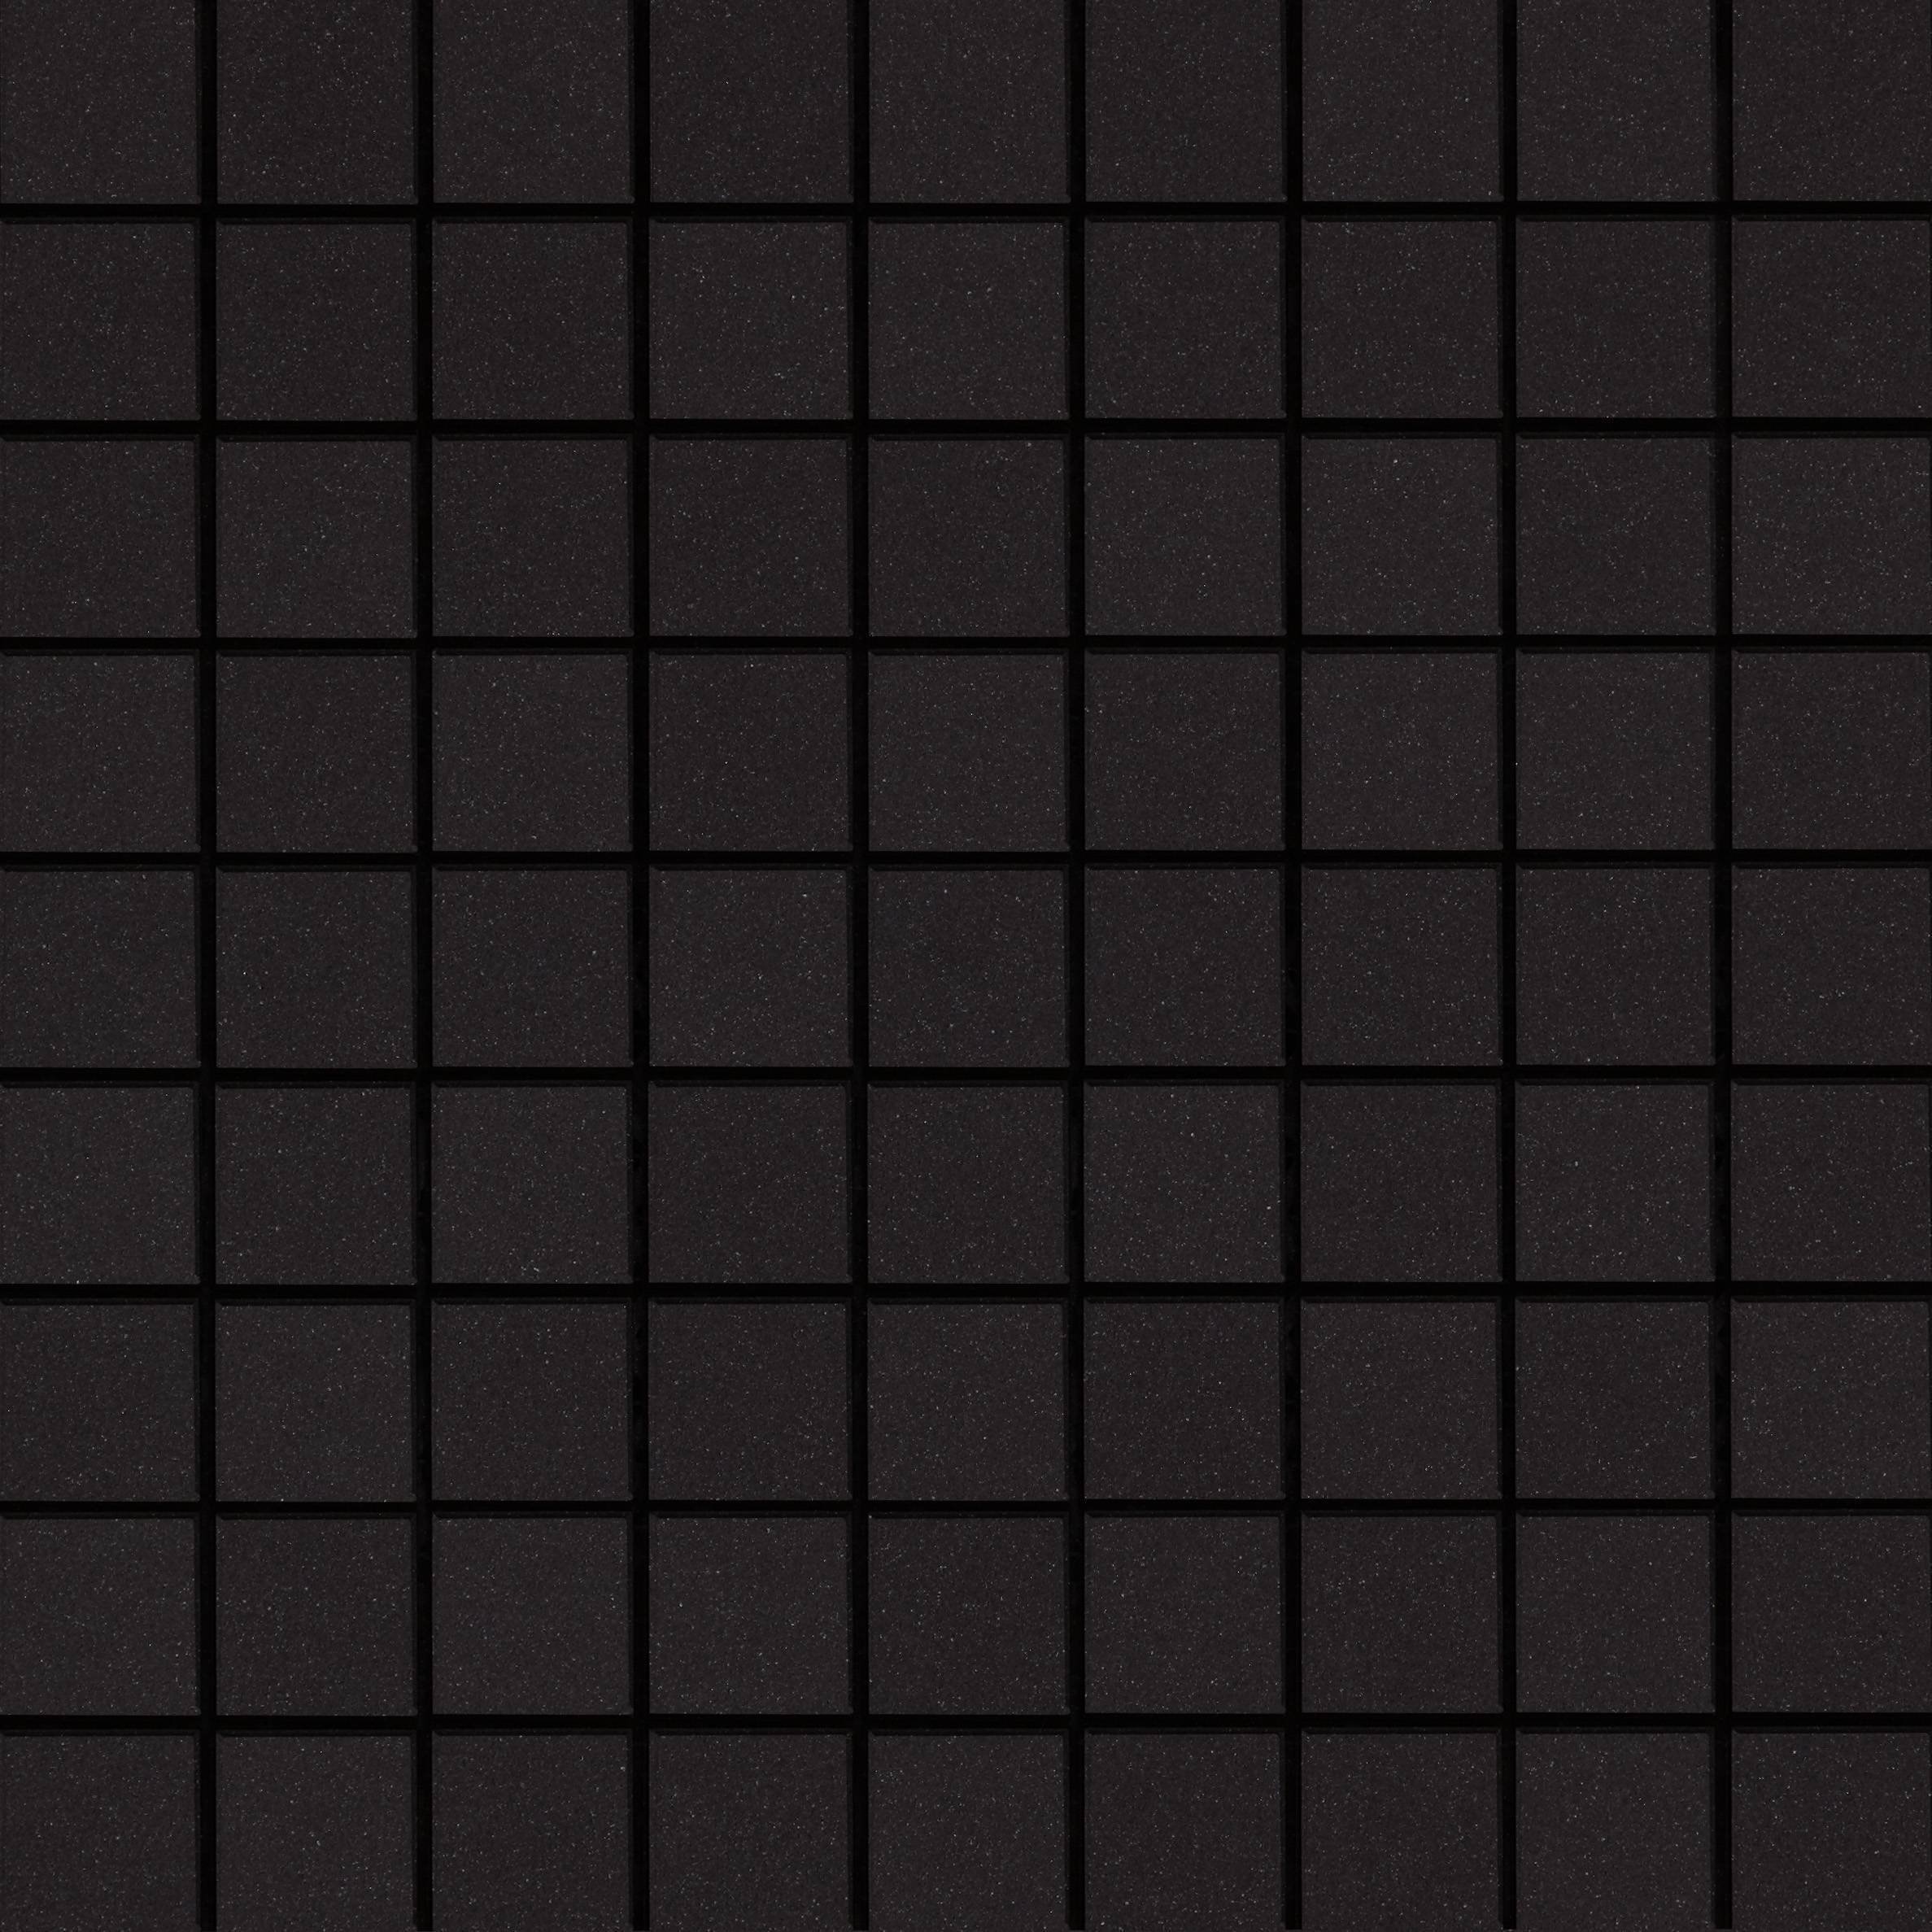 4 квадрата плитки. Черная плитка. Плитка текстура. Плитка черная глянцевая. Черная квадратная плитка.